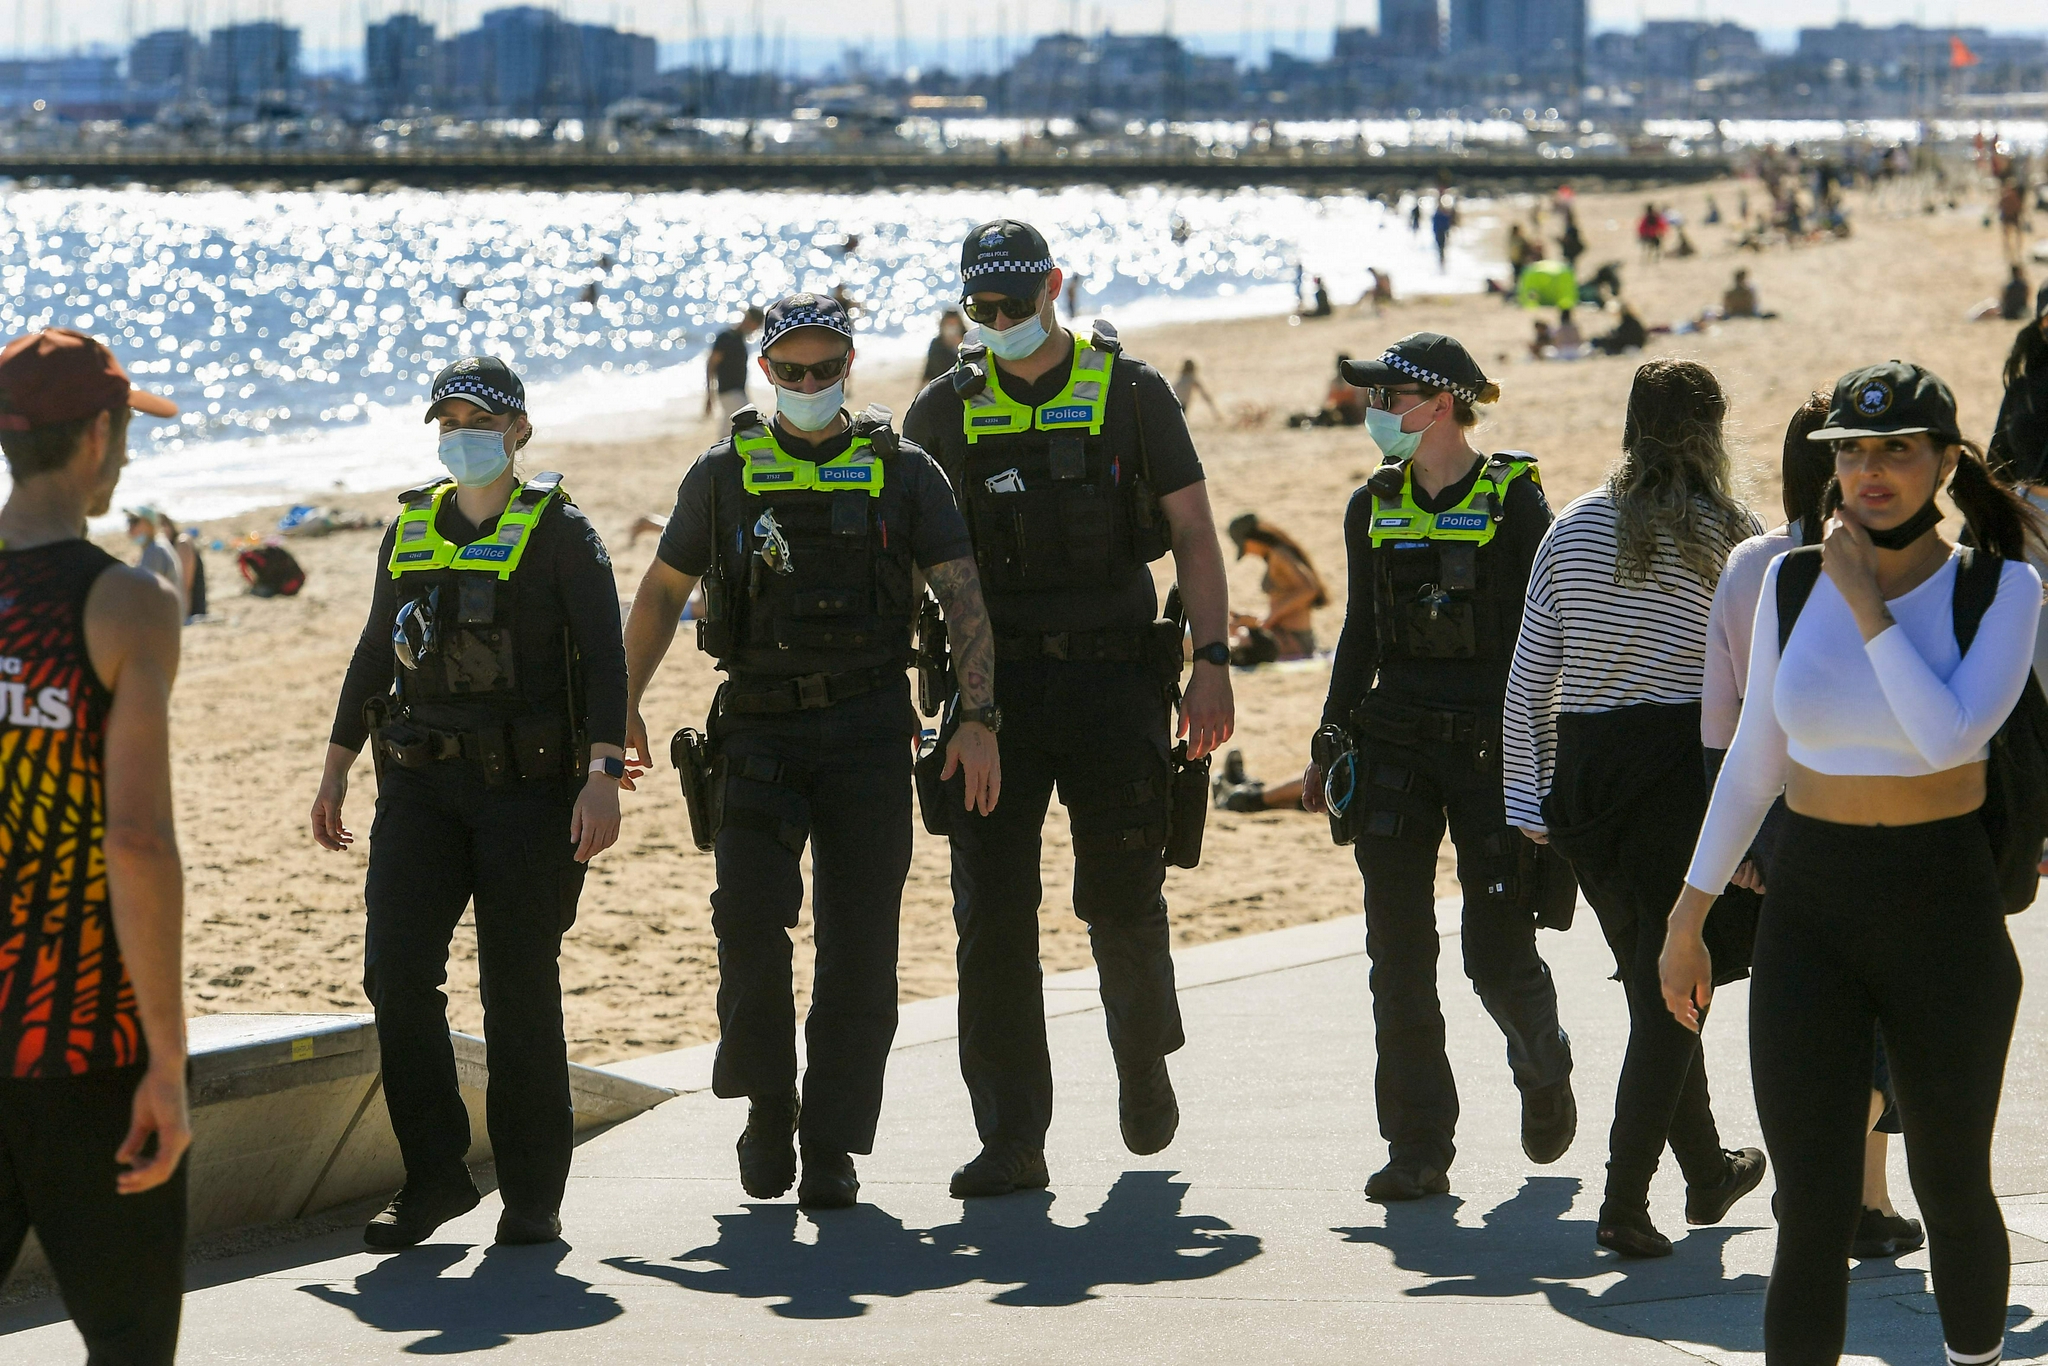 9月23日,警察在澳大利亚墨尔本的海滩巡逻新华社/法新